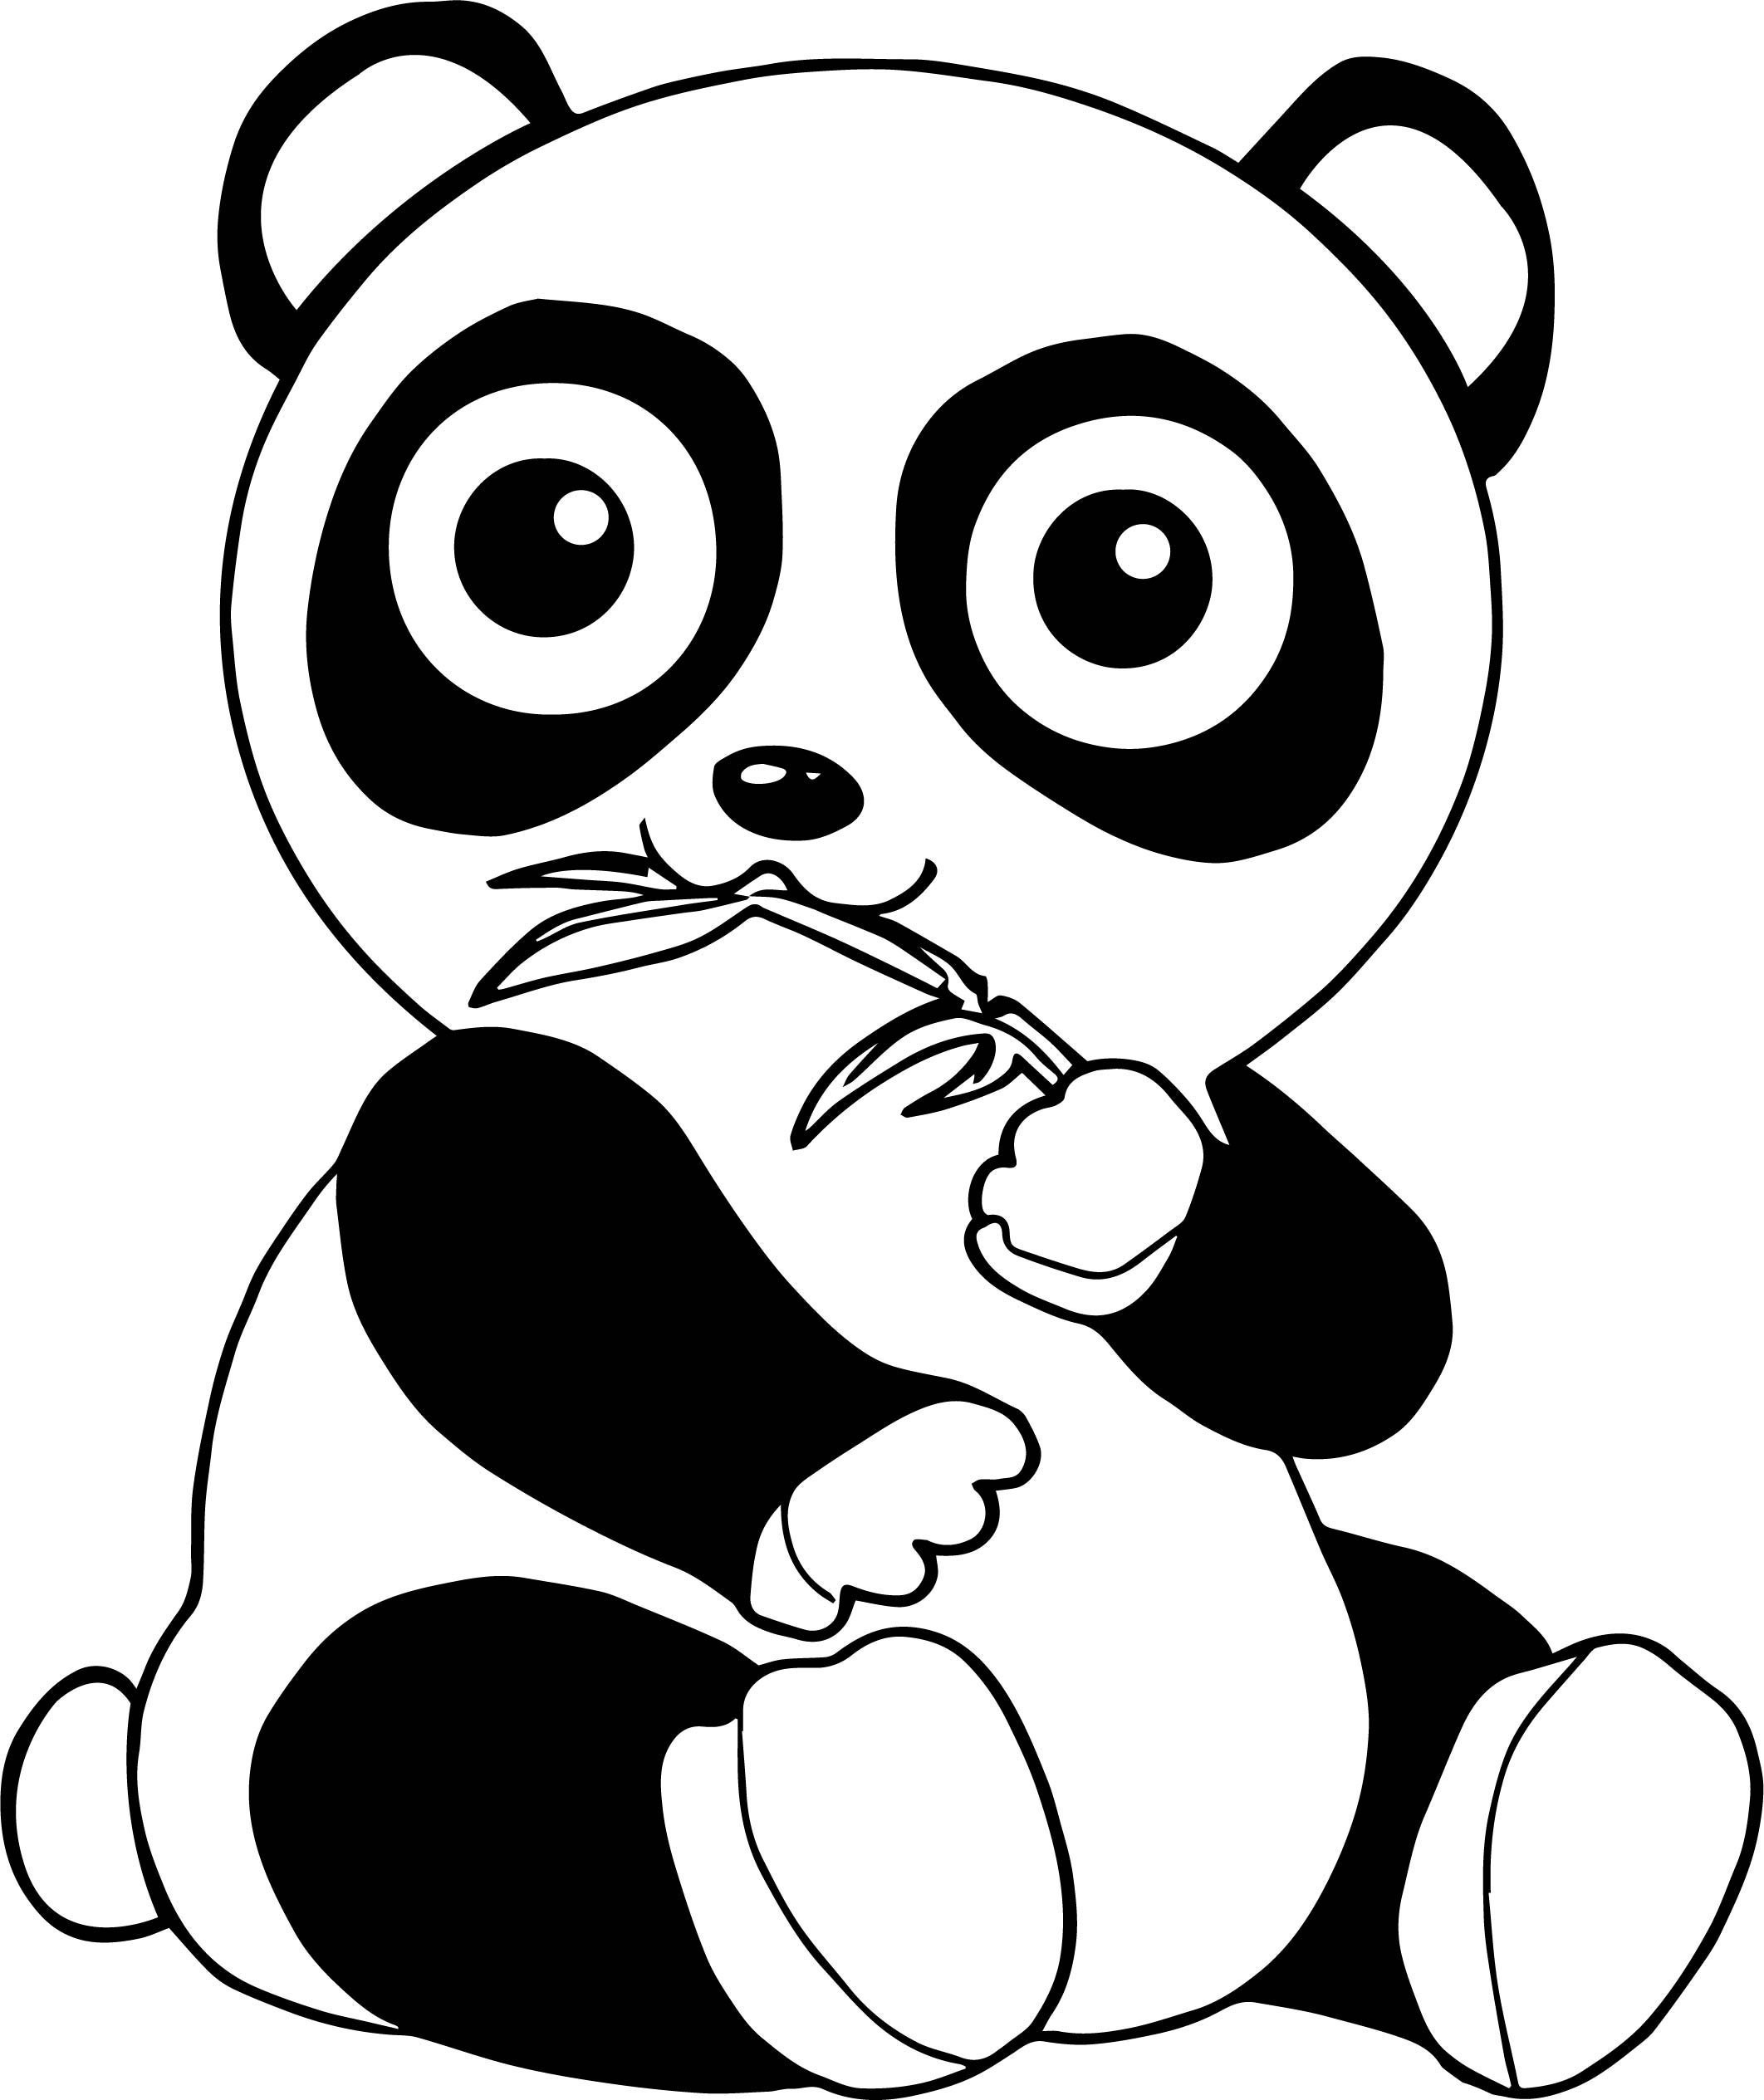 Панда раскраска Изображения – скачать бесплатно на Freepik